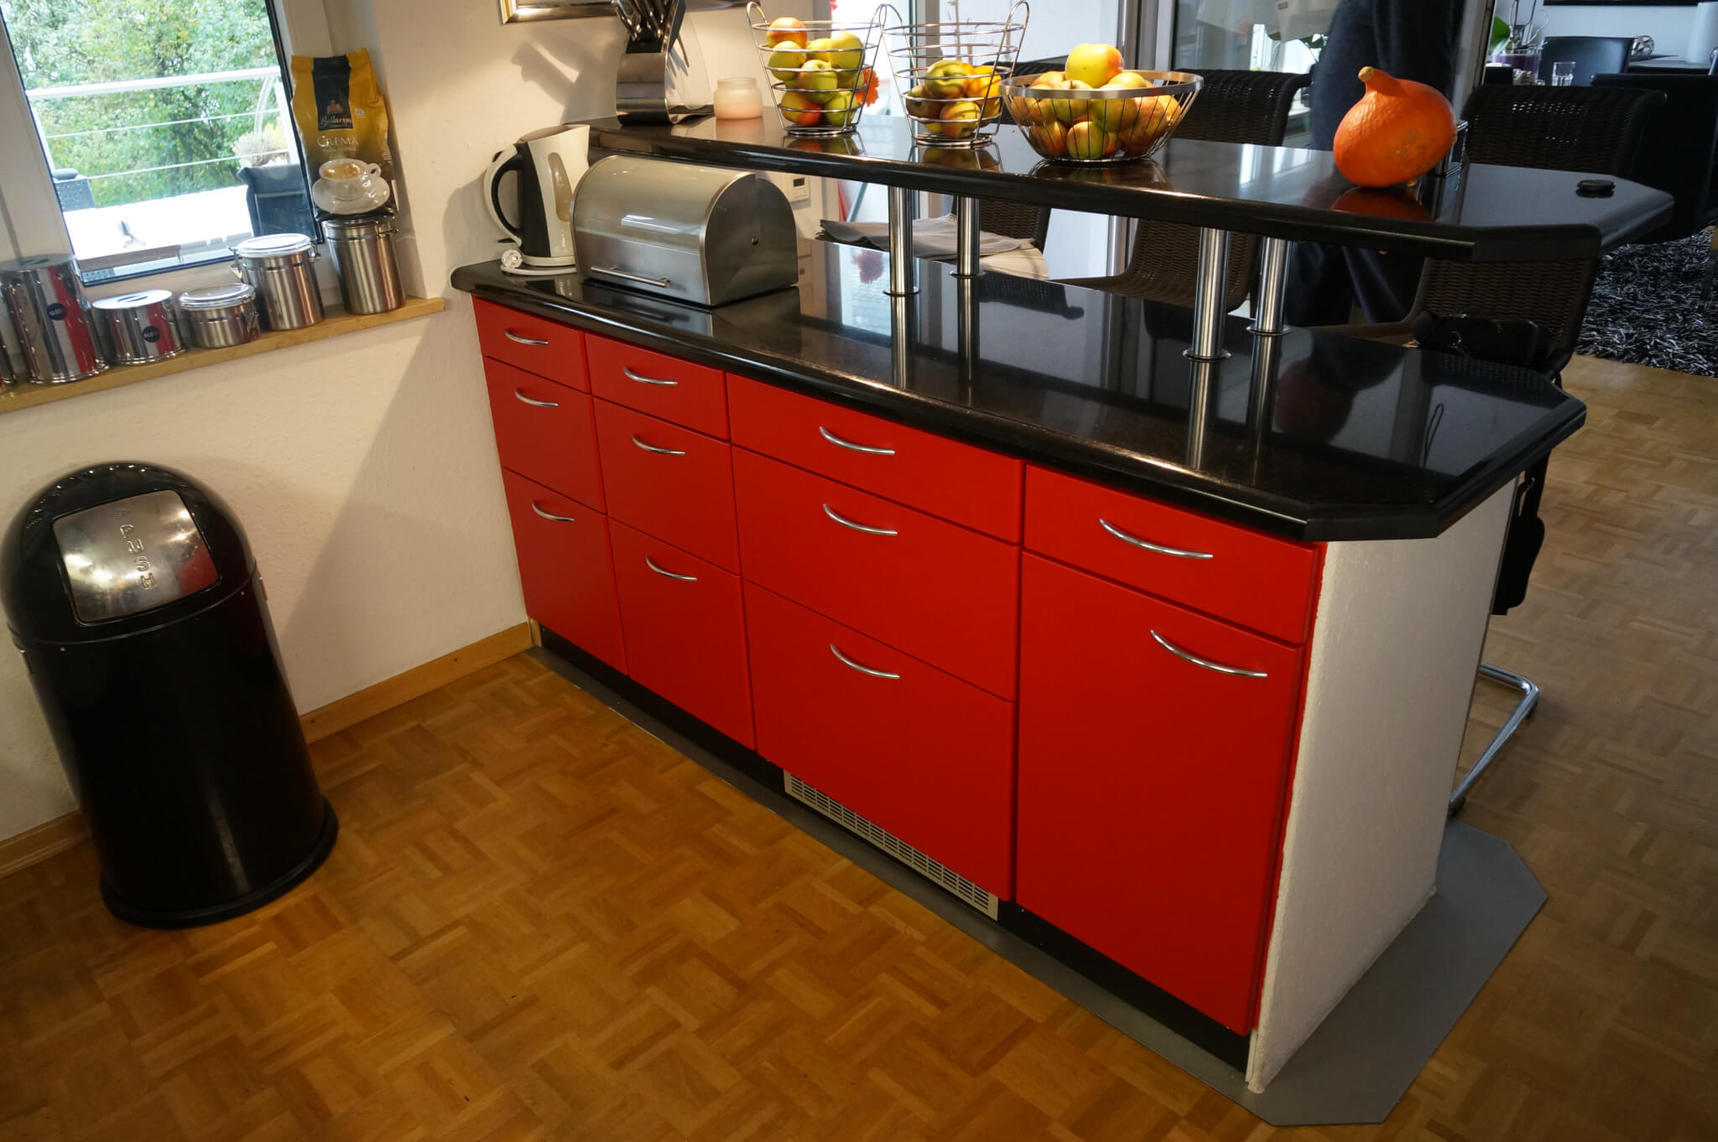 Pellicola adesiva colorata con immagine esemplificativa di mobili da cucina in pellicola colorata rossa CO-BA-S147 Rough Lobster